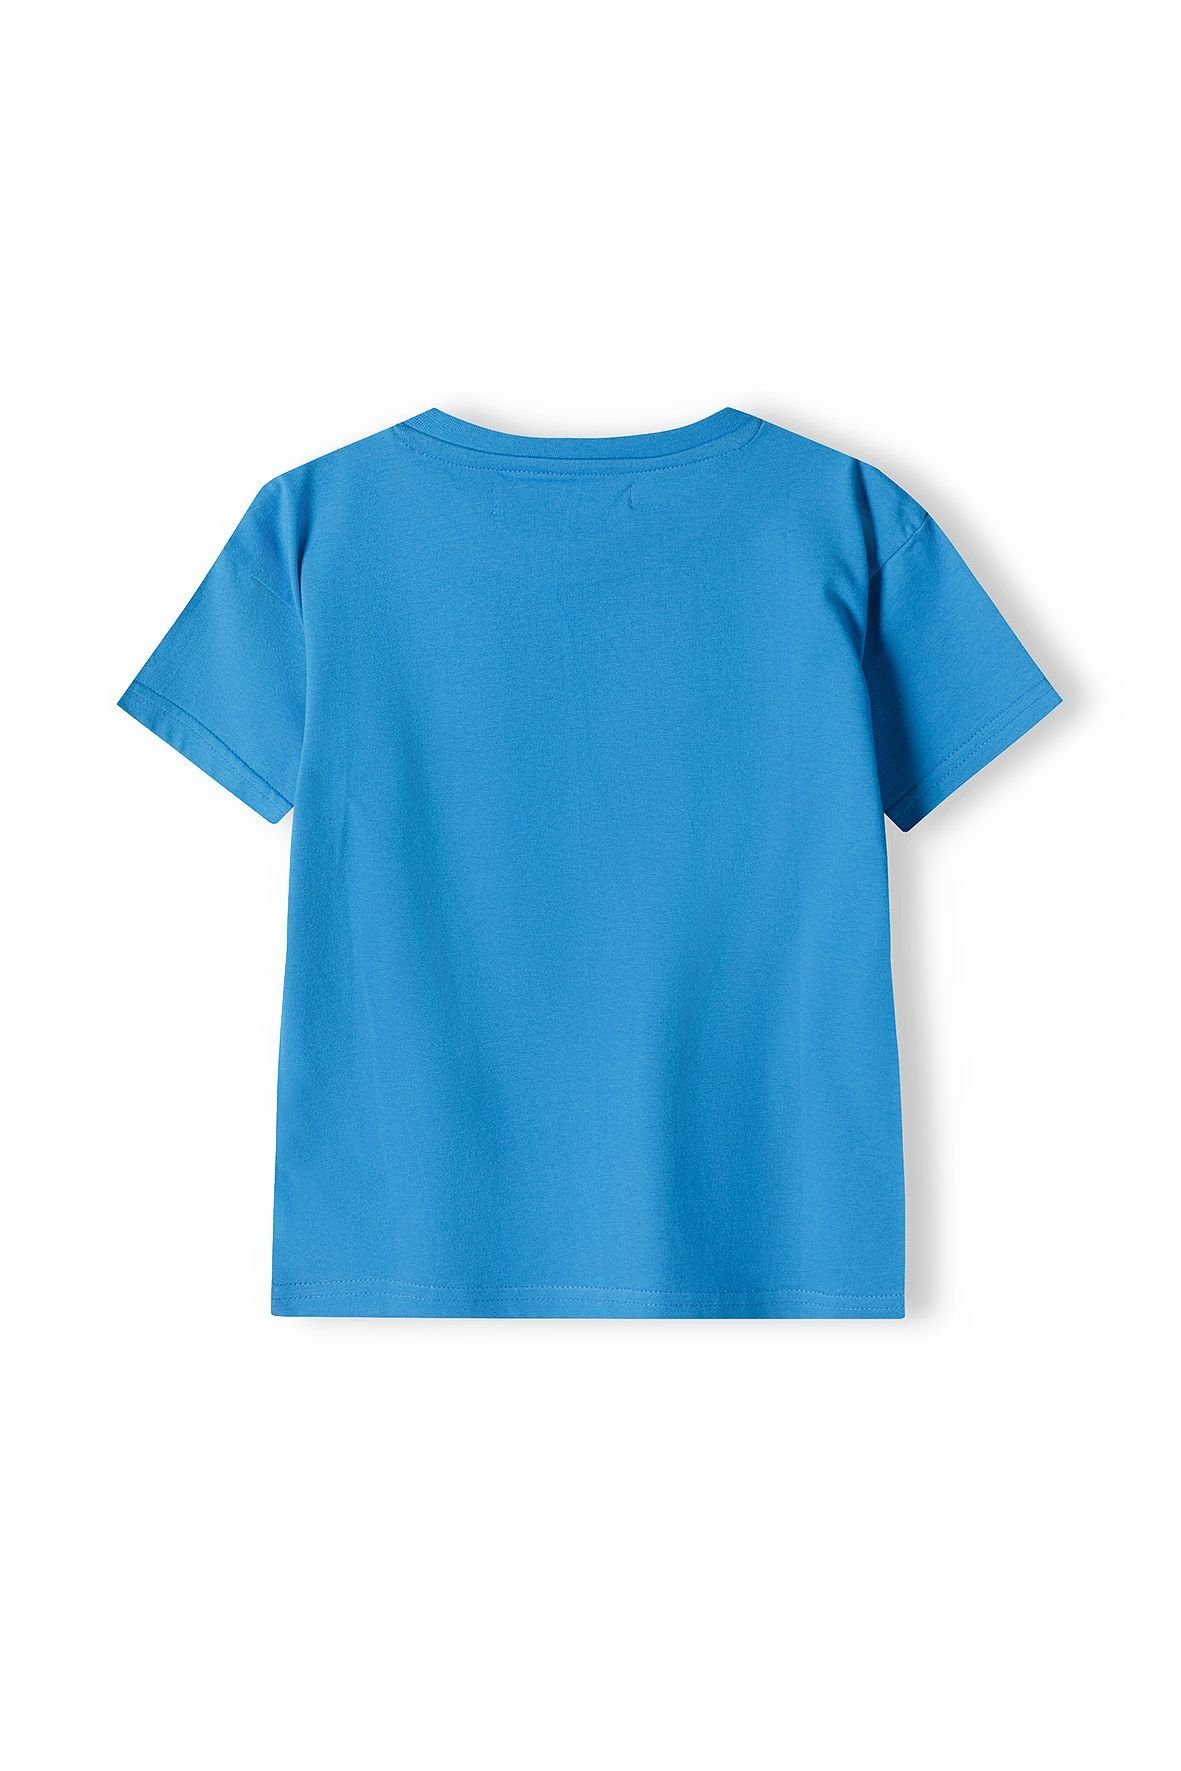 MINOTI T-Shirt Blau (12m-8y) T-Shirt